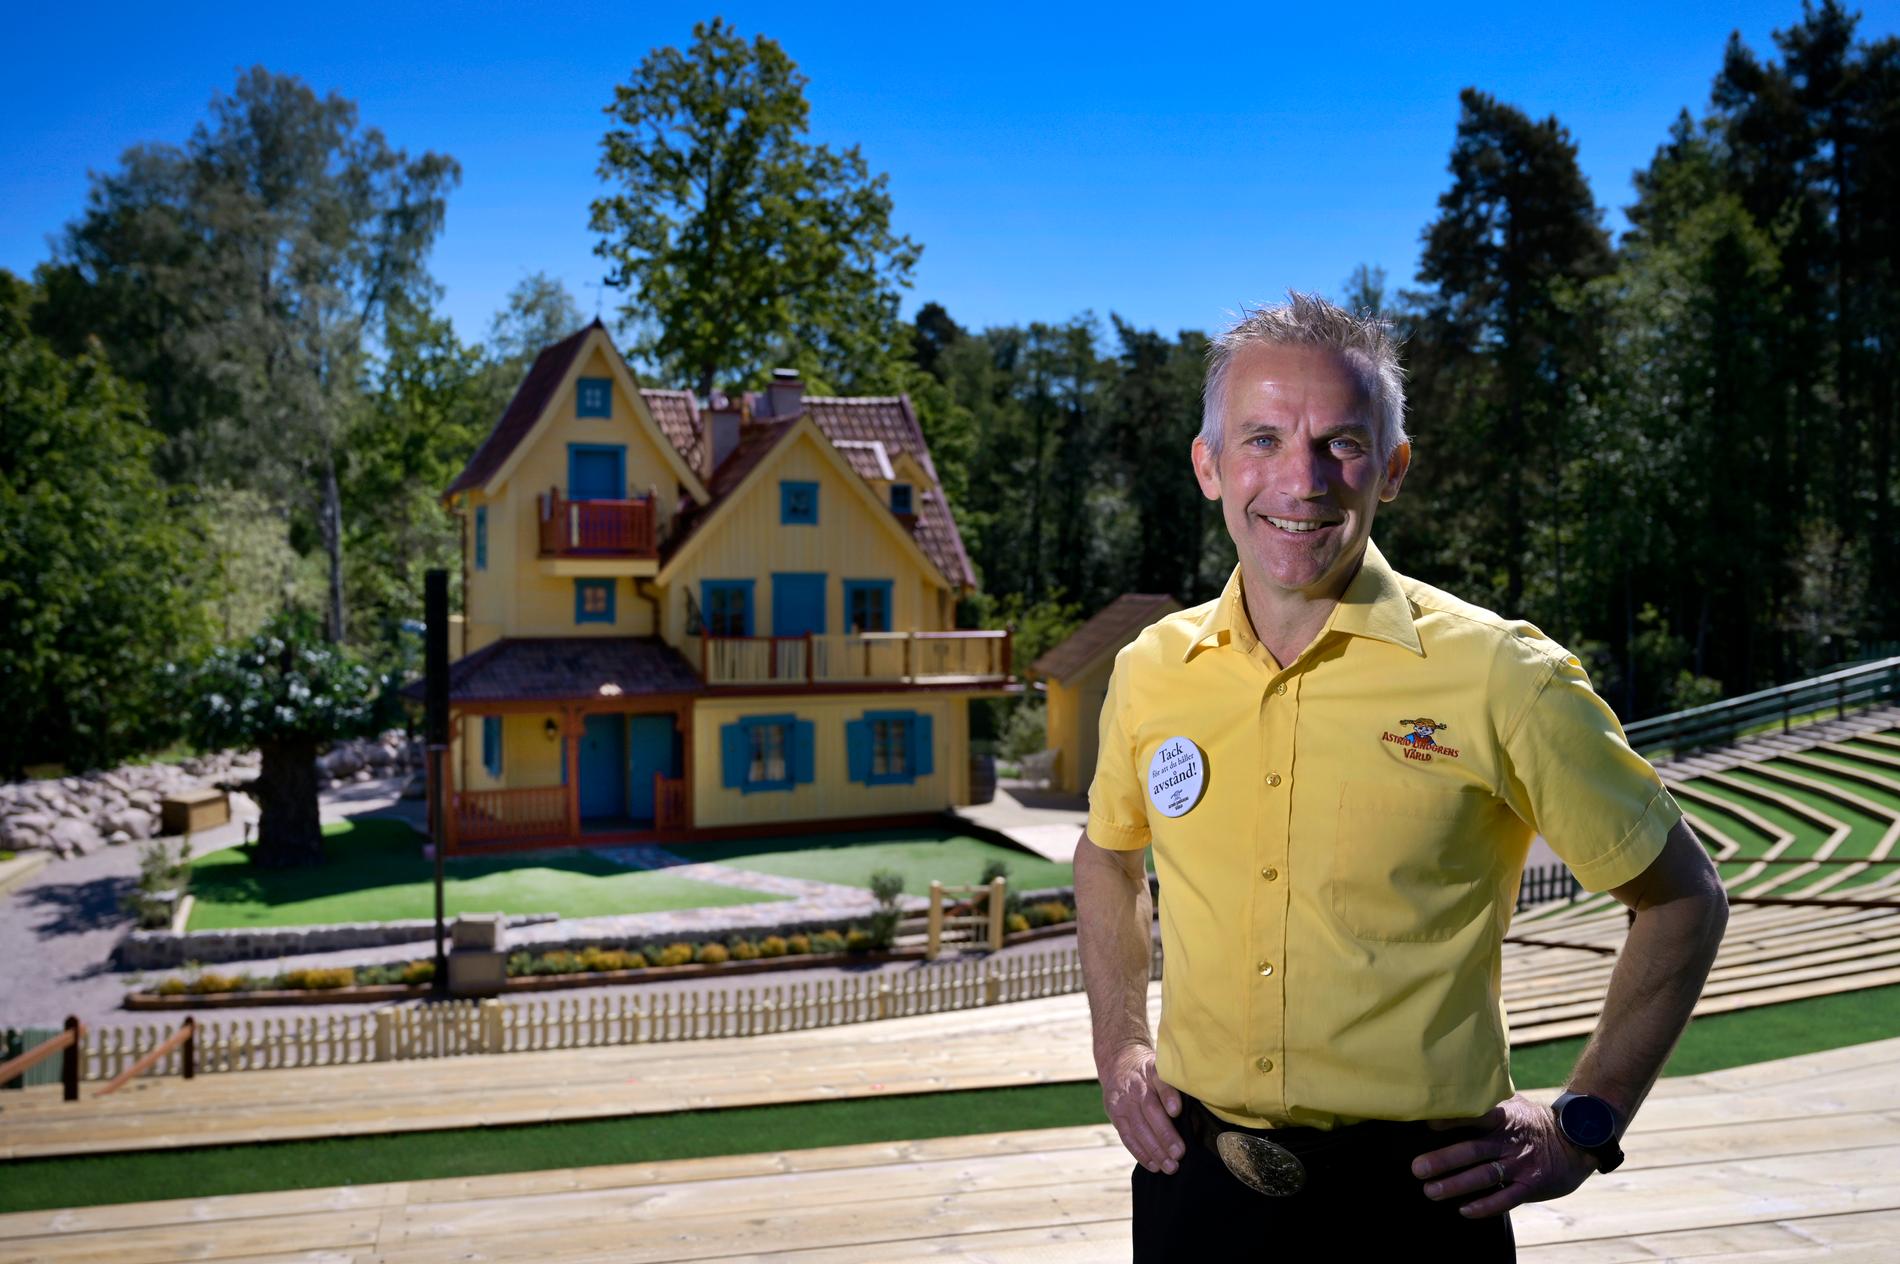 Vd:n Joacim Johansson utanför nya Villa Villekulla i temaparken Astrid Lindgrens värld. Inför premiären har man tvingats genomföra en rad restriktioner.